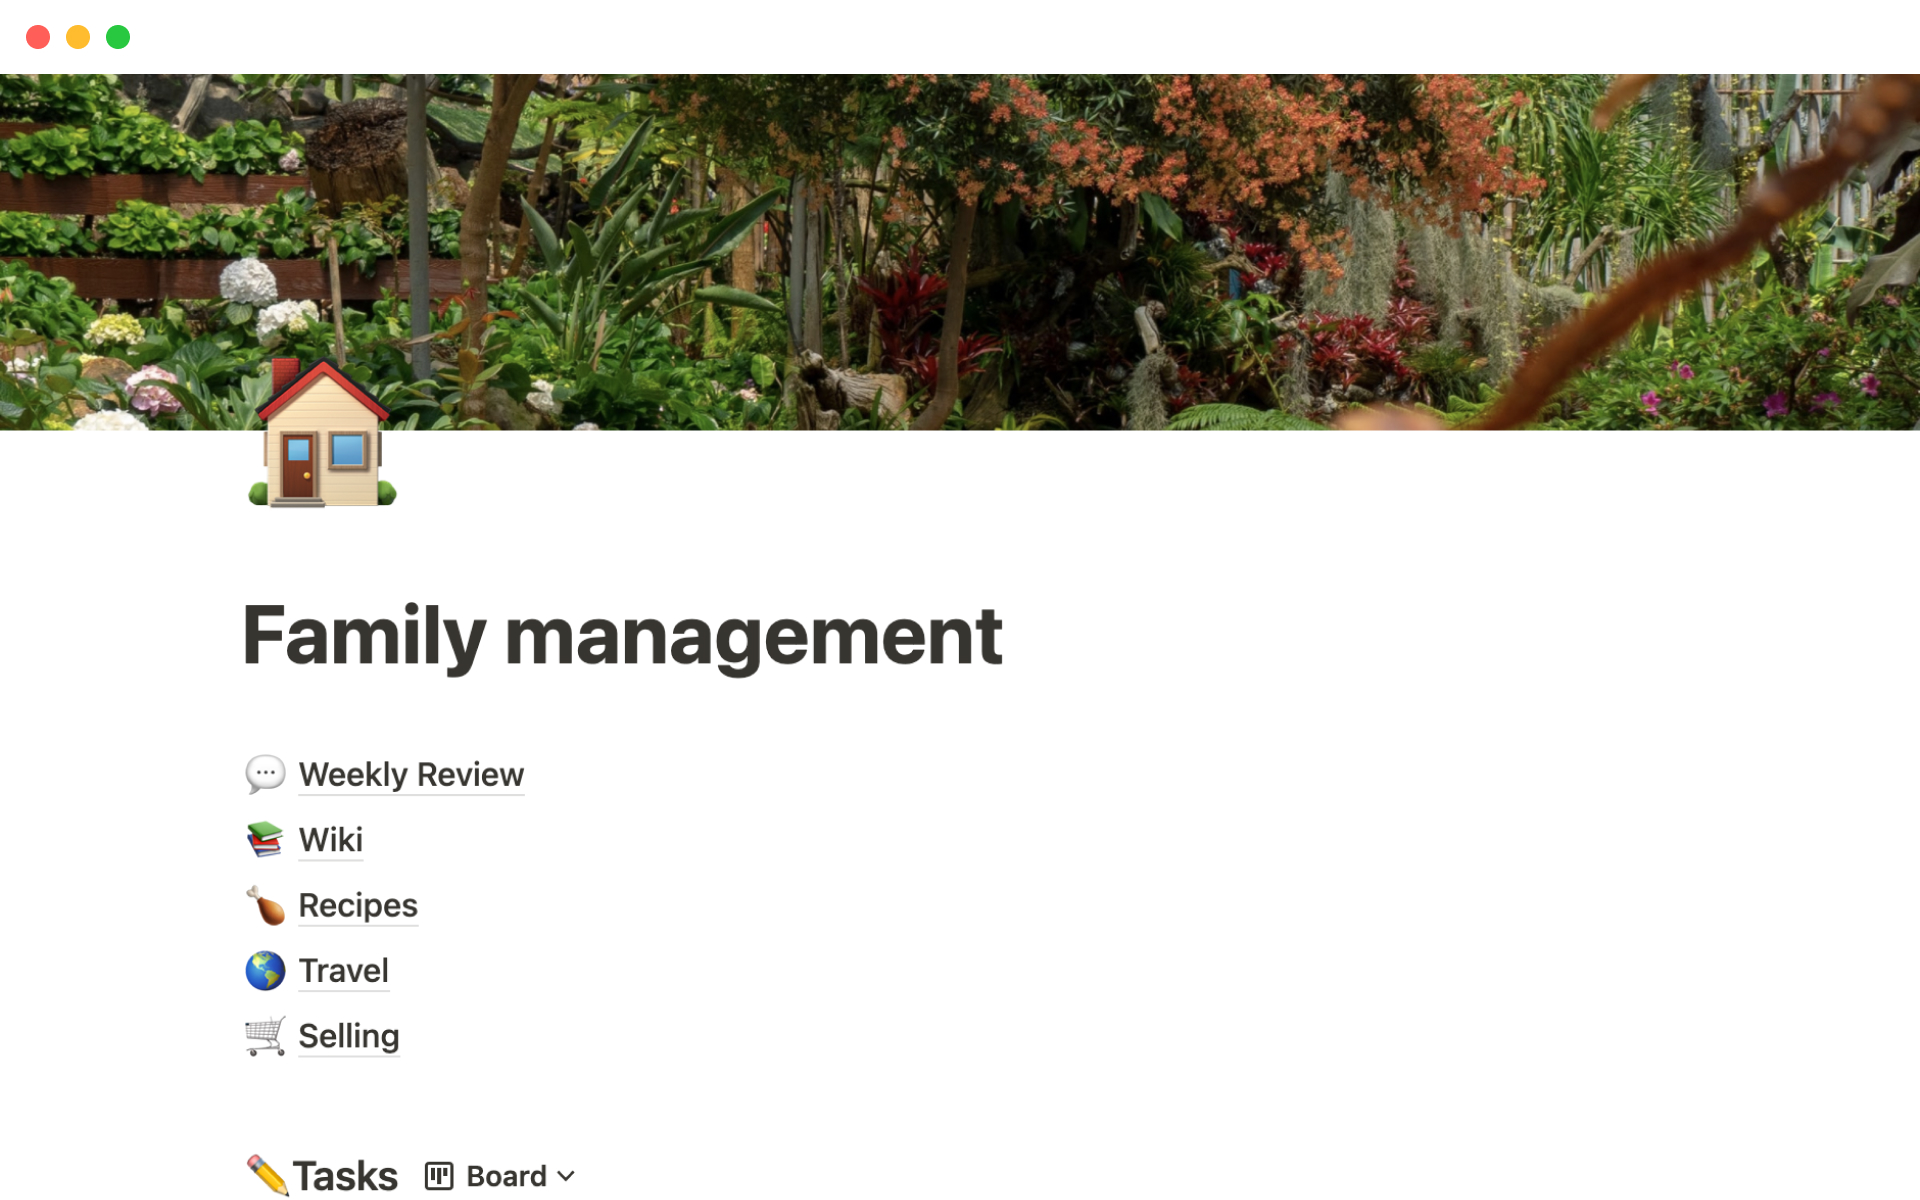 Aperçu du modèle de Family management